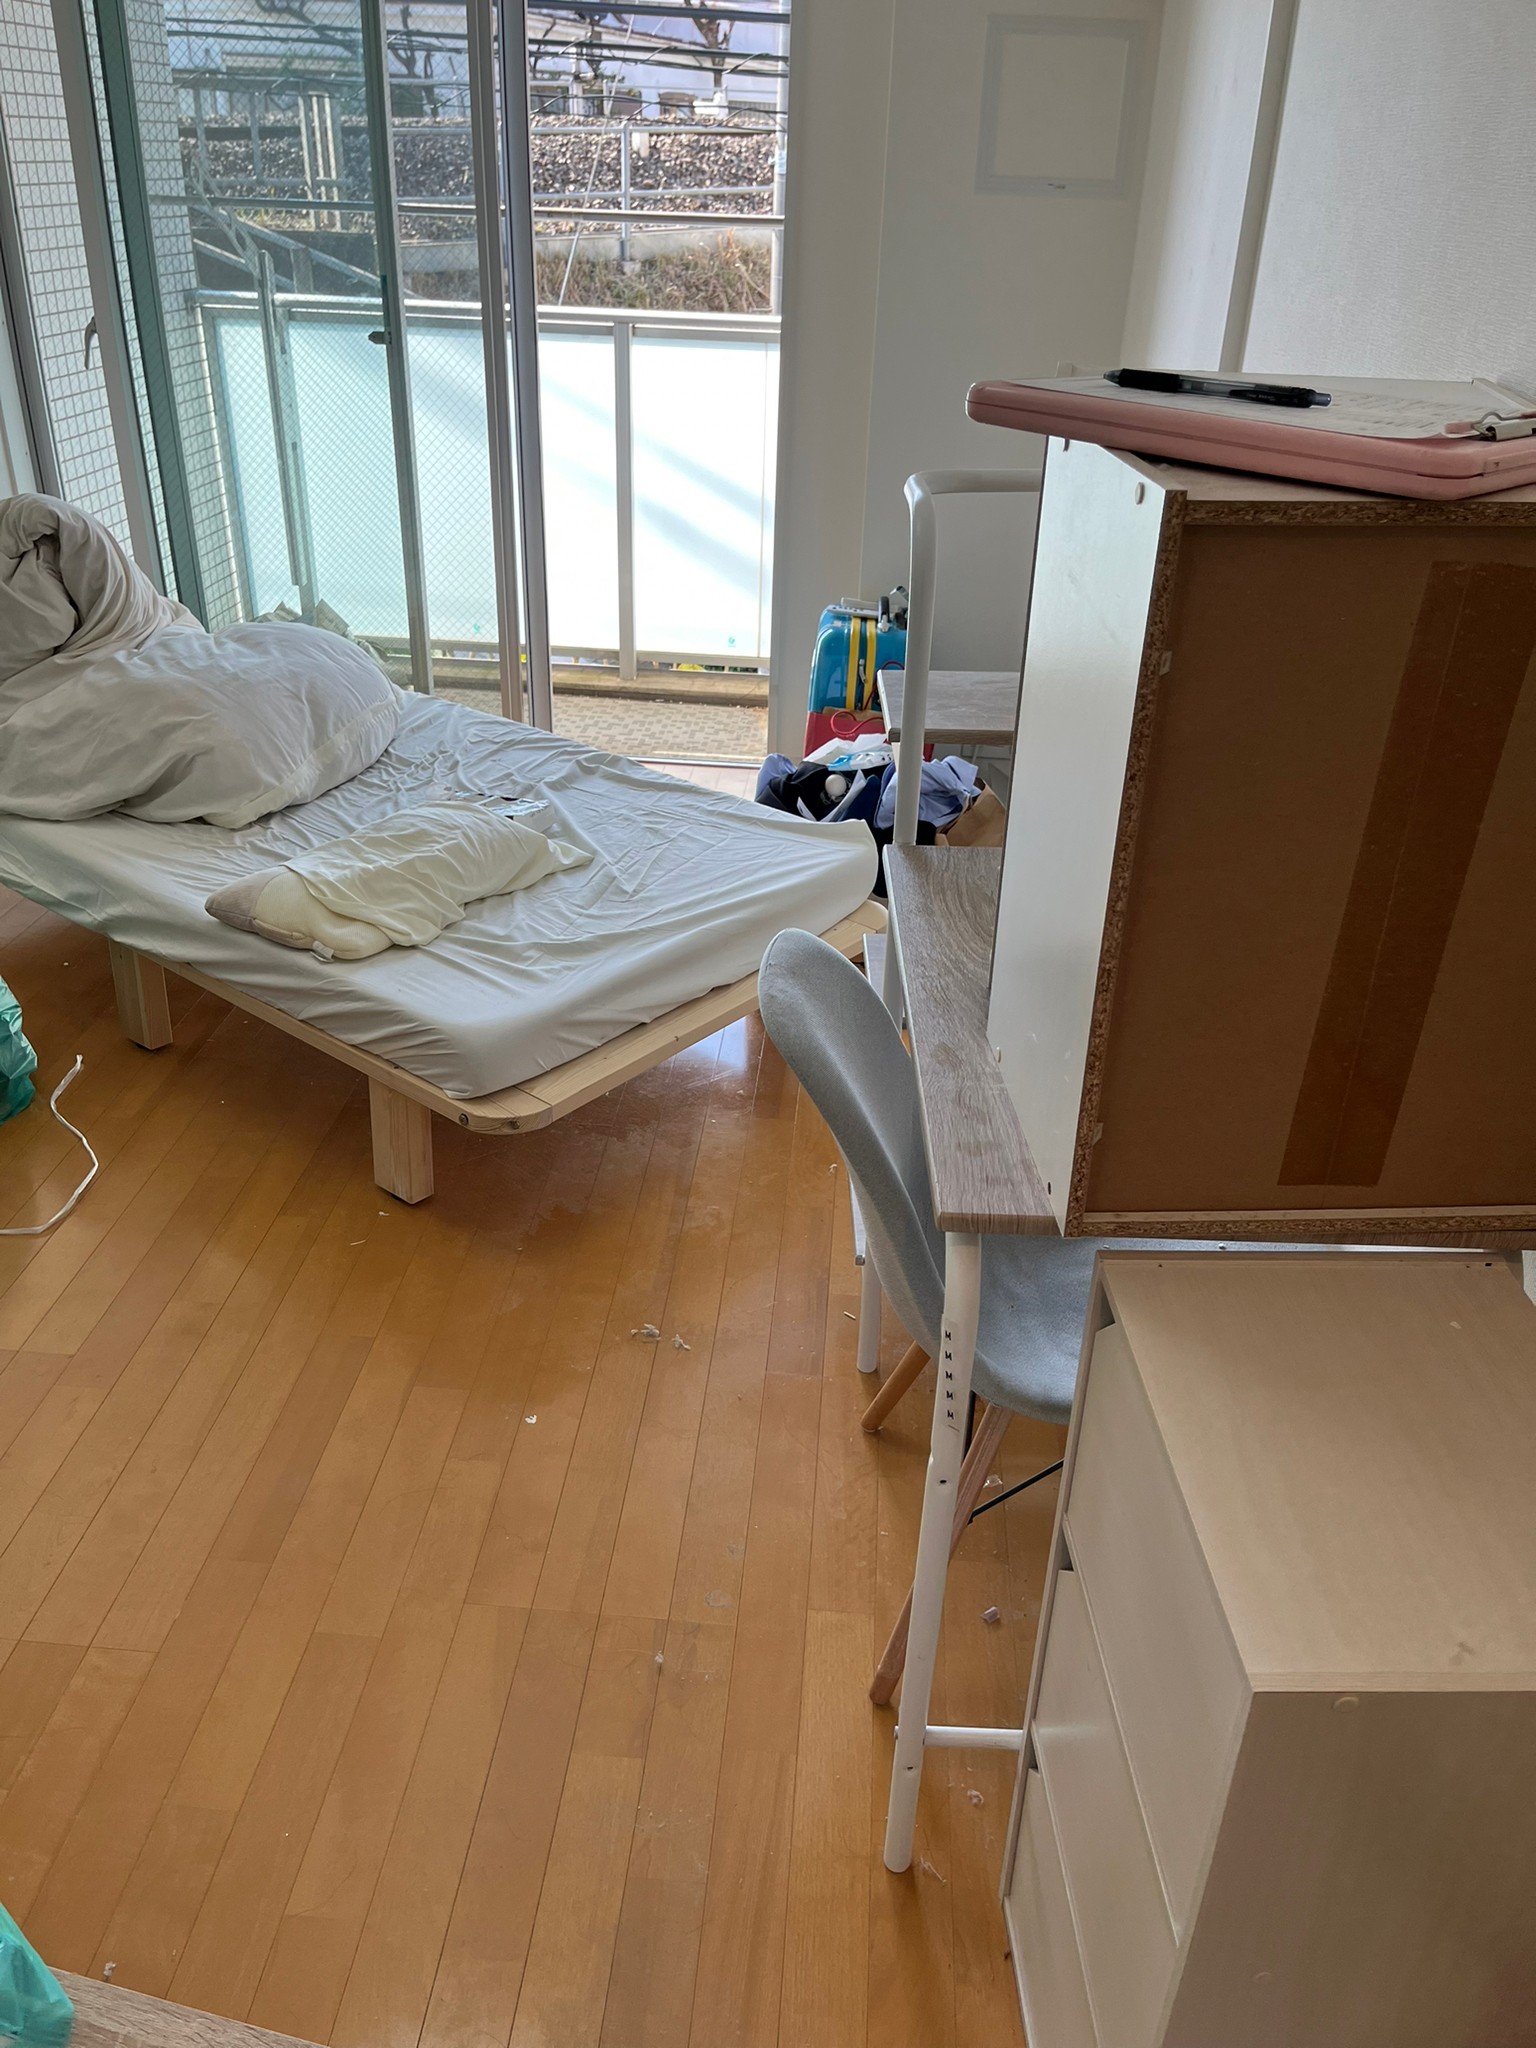 ベッド、机、椅子、棚、タンスの回収前の状態